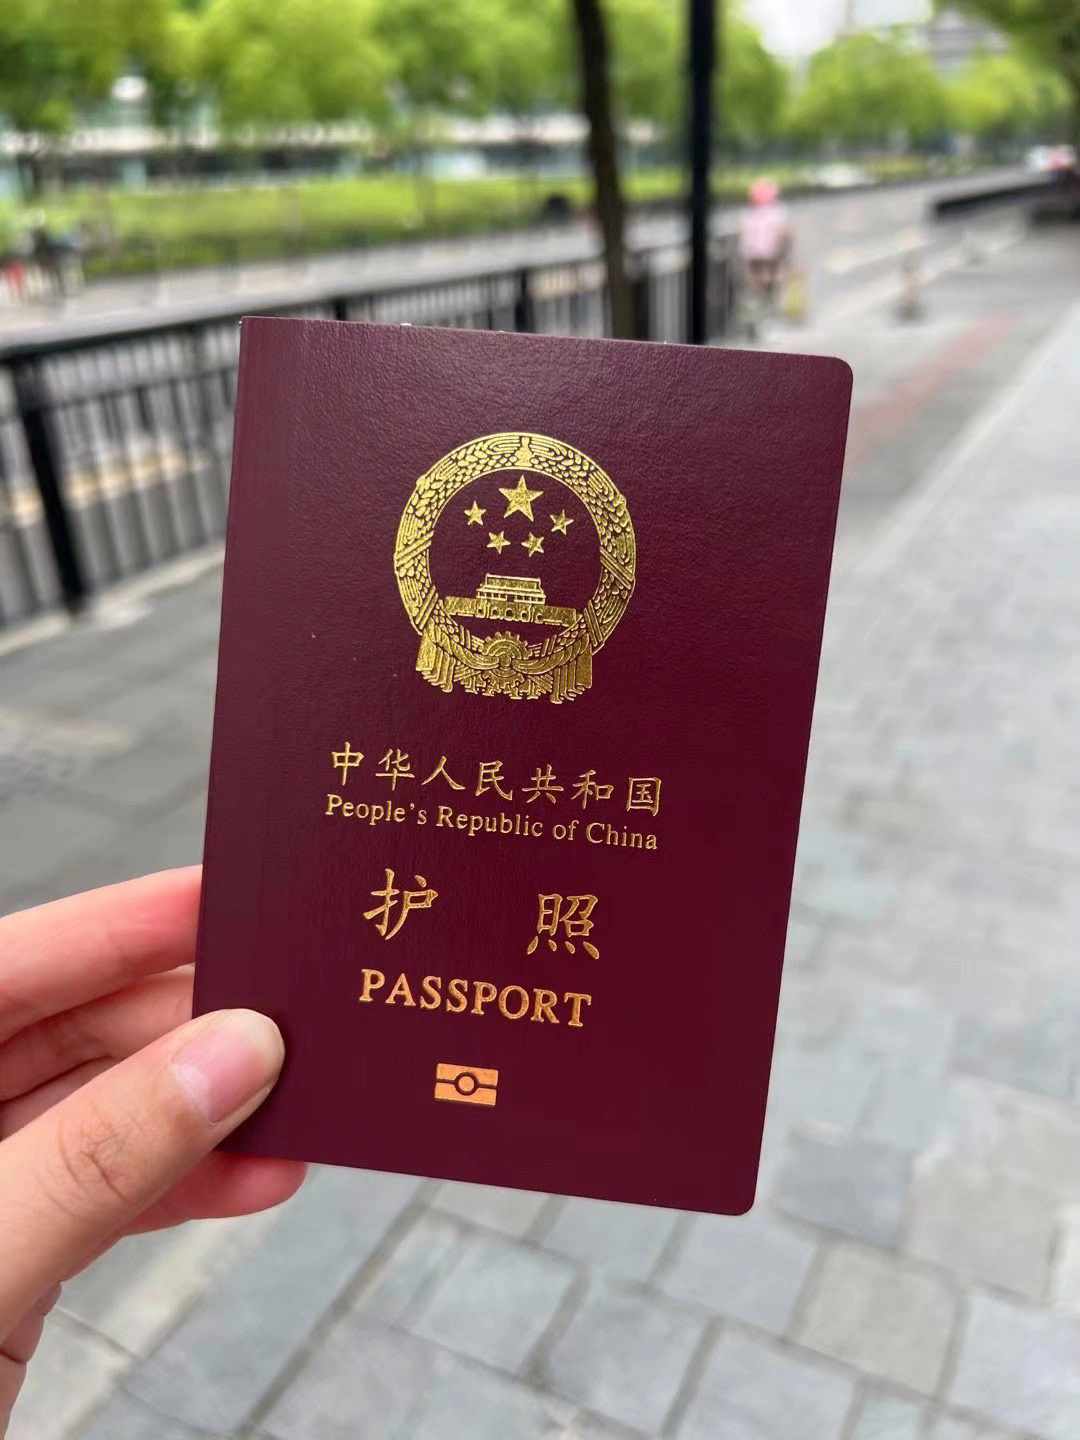 上海解封心心念念拿到了宝宝的护照